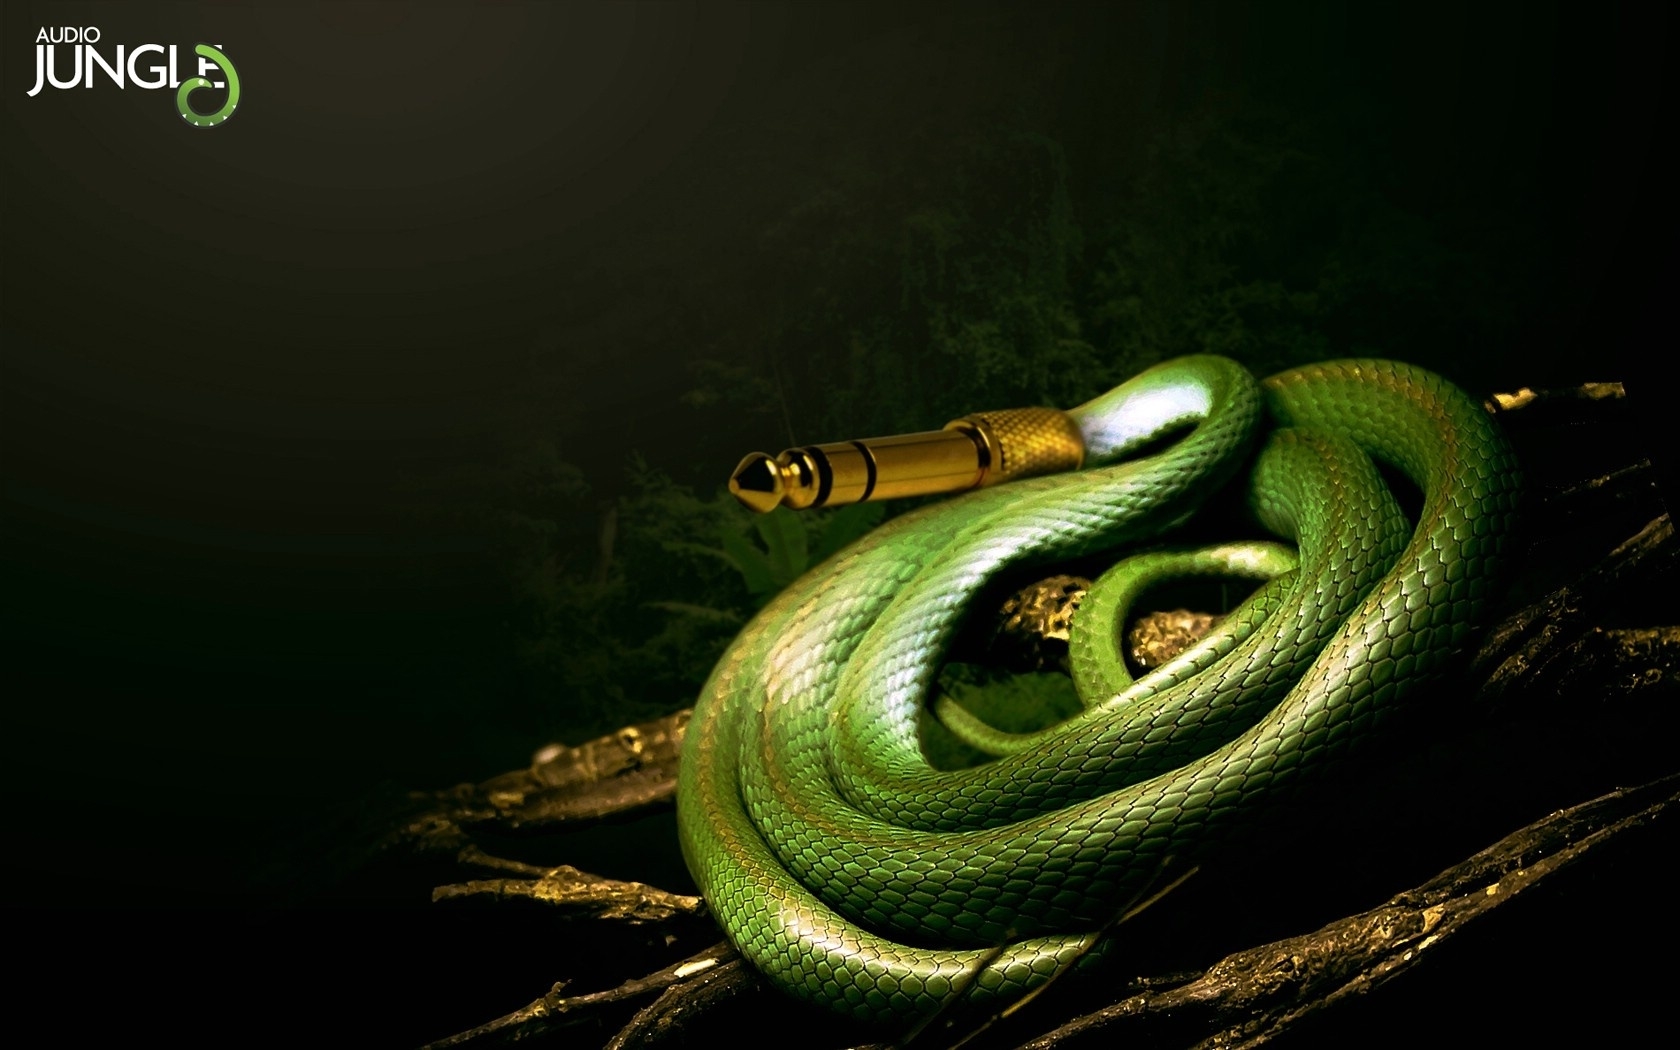 3d обои Аудио-провод в виде змеи (Audio jungle)  змеи # 41132